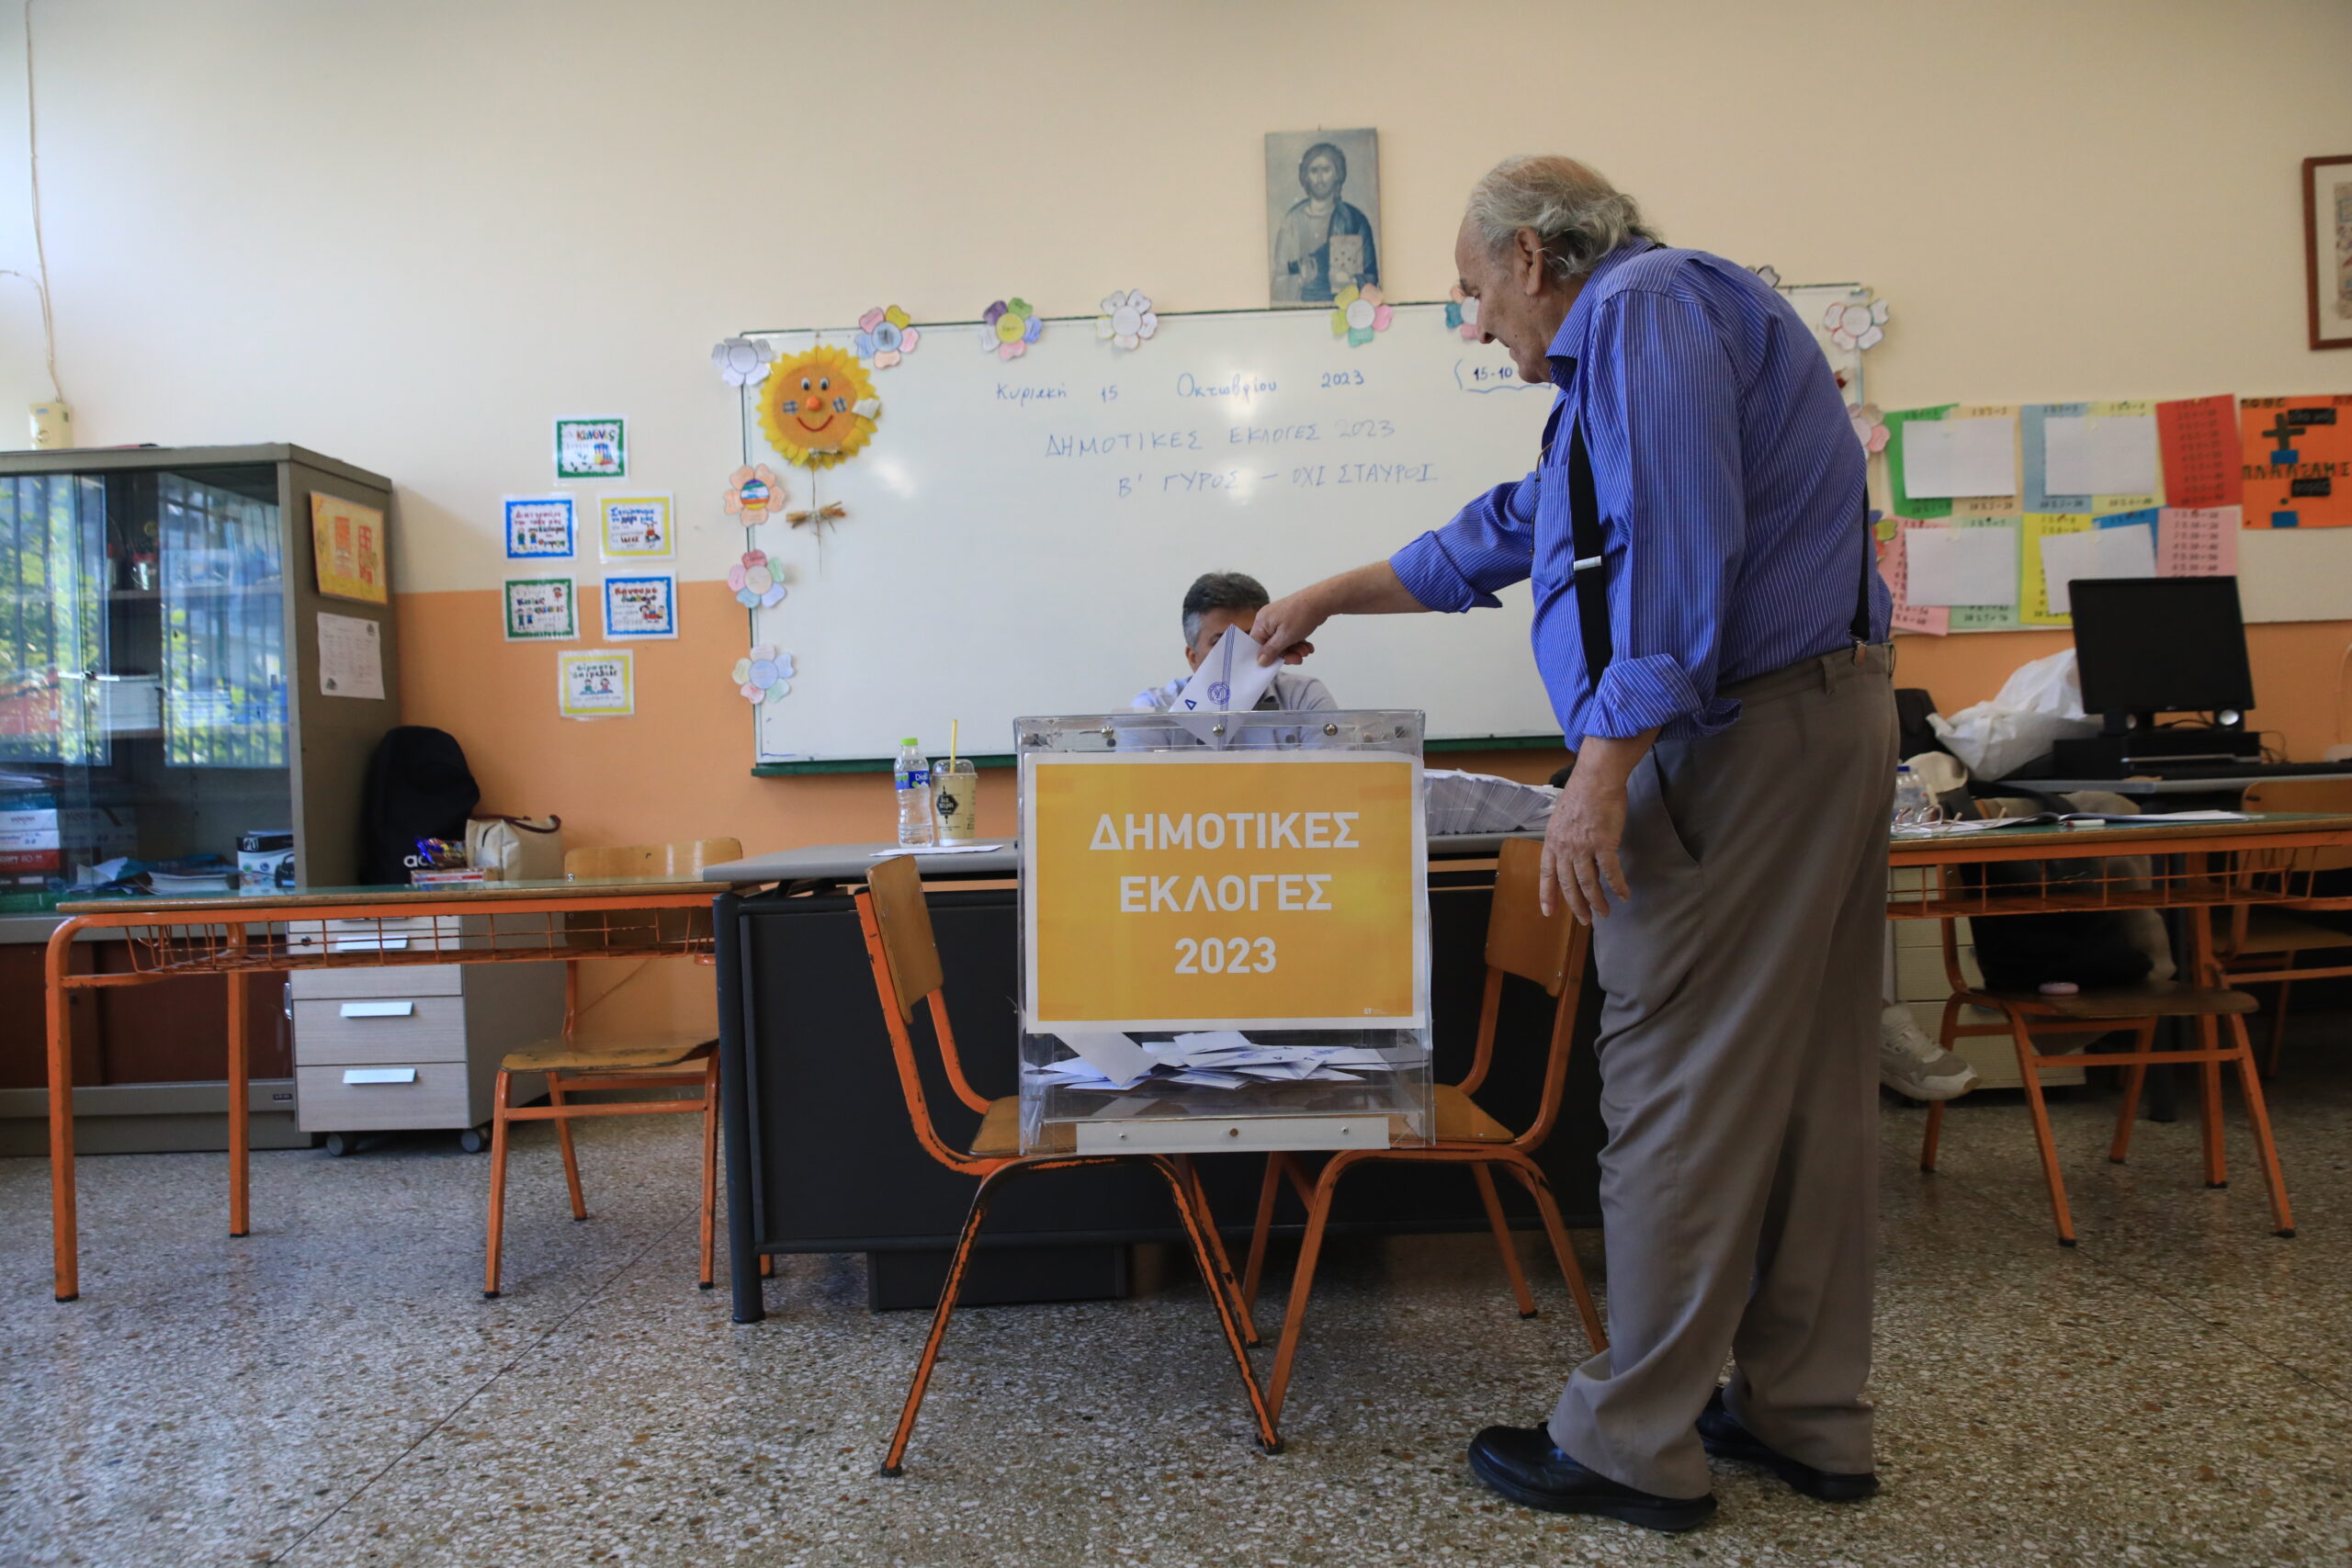 Σ. Koντακσής: Στις αυτοδιοικητικές εκλογές βλέπουμε «εικόνες από το μέλλον»